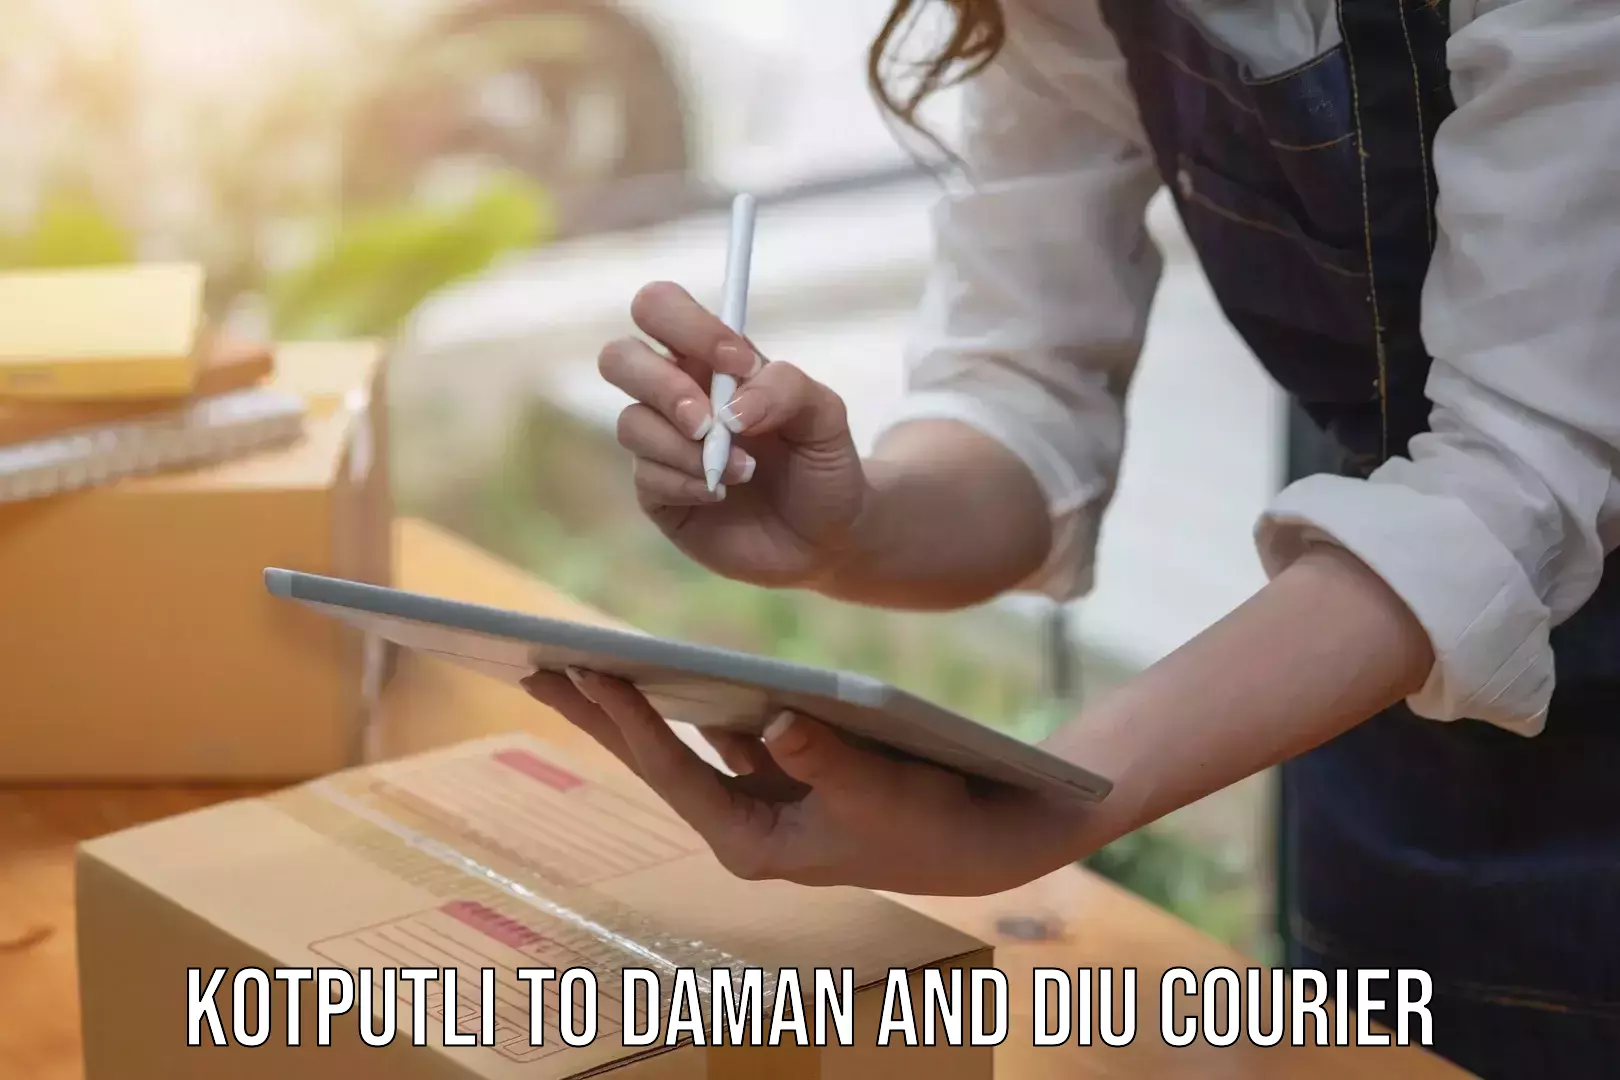 Reliable courier service Kotputli to Daman and Diu